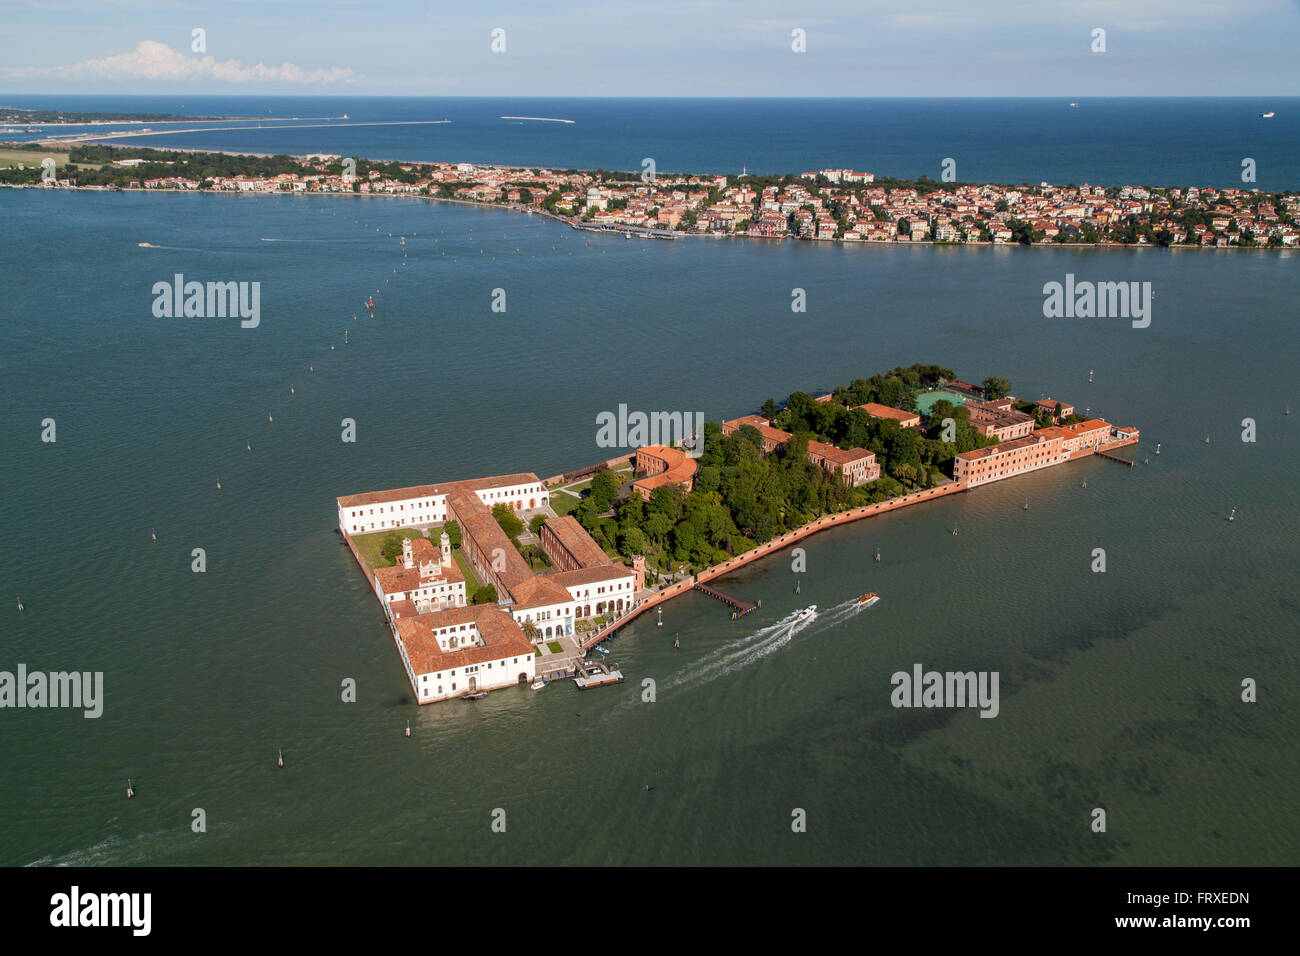 Vista aerea dell'Isola di San Lazzaro con il monastero di San Lazzaro degli Armeni, Lido, Mare Adriatico, mare Mediterranea, Veneto, Italia Foto Stock